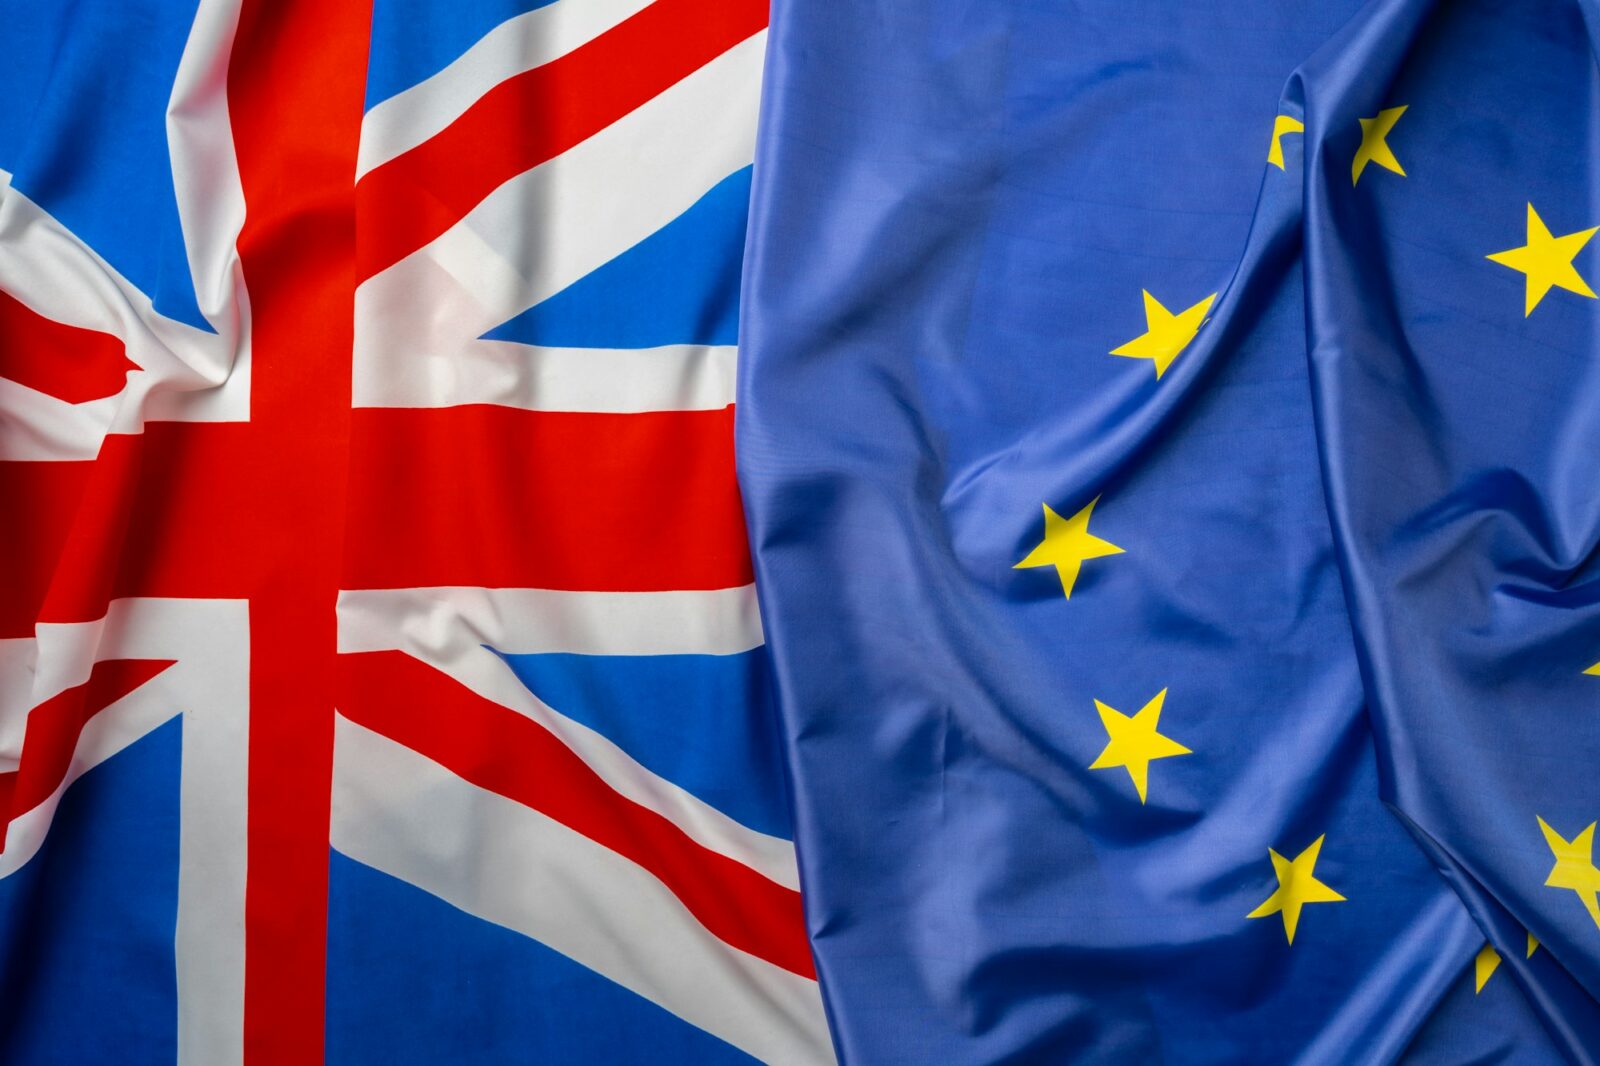 Banderas del Reino Unido y de la Unión Europea plegadas juntas